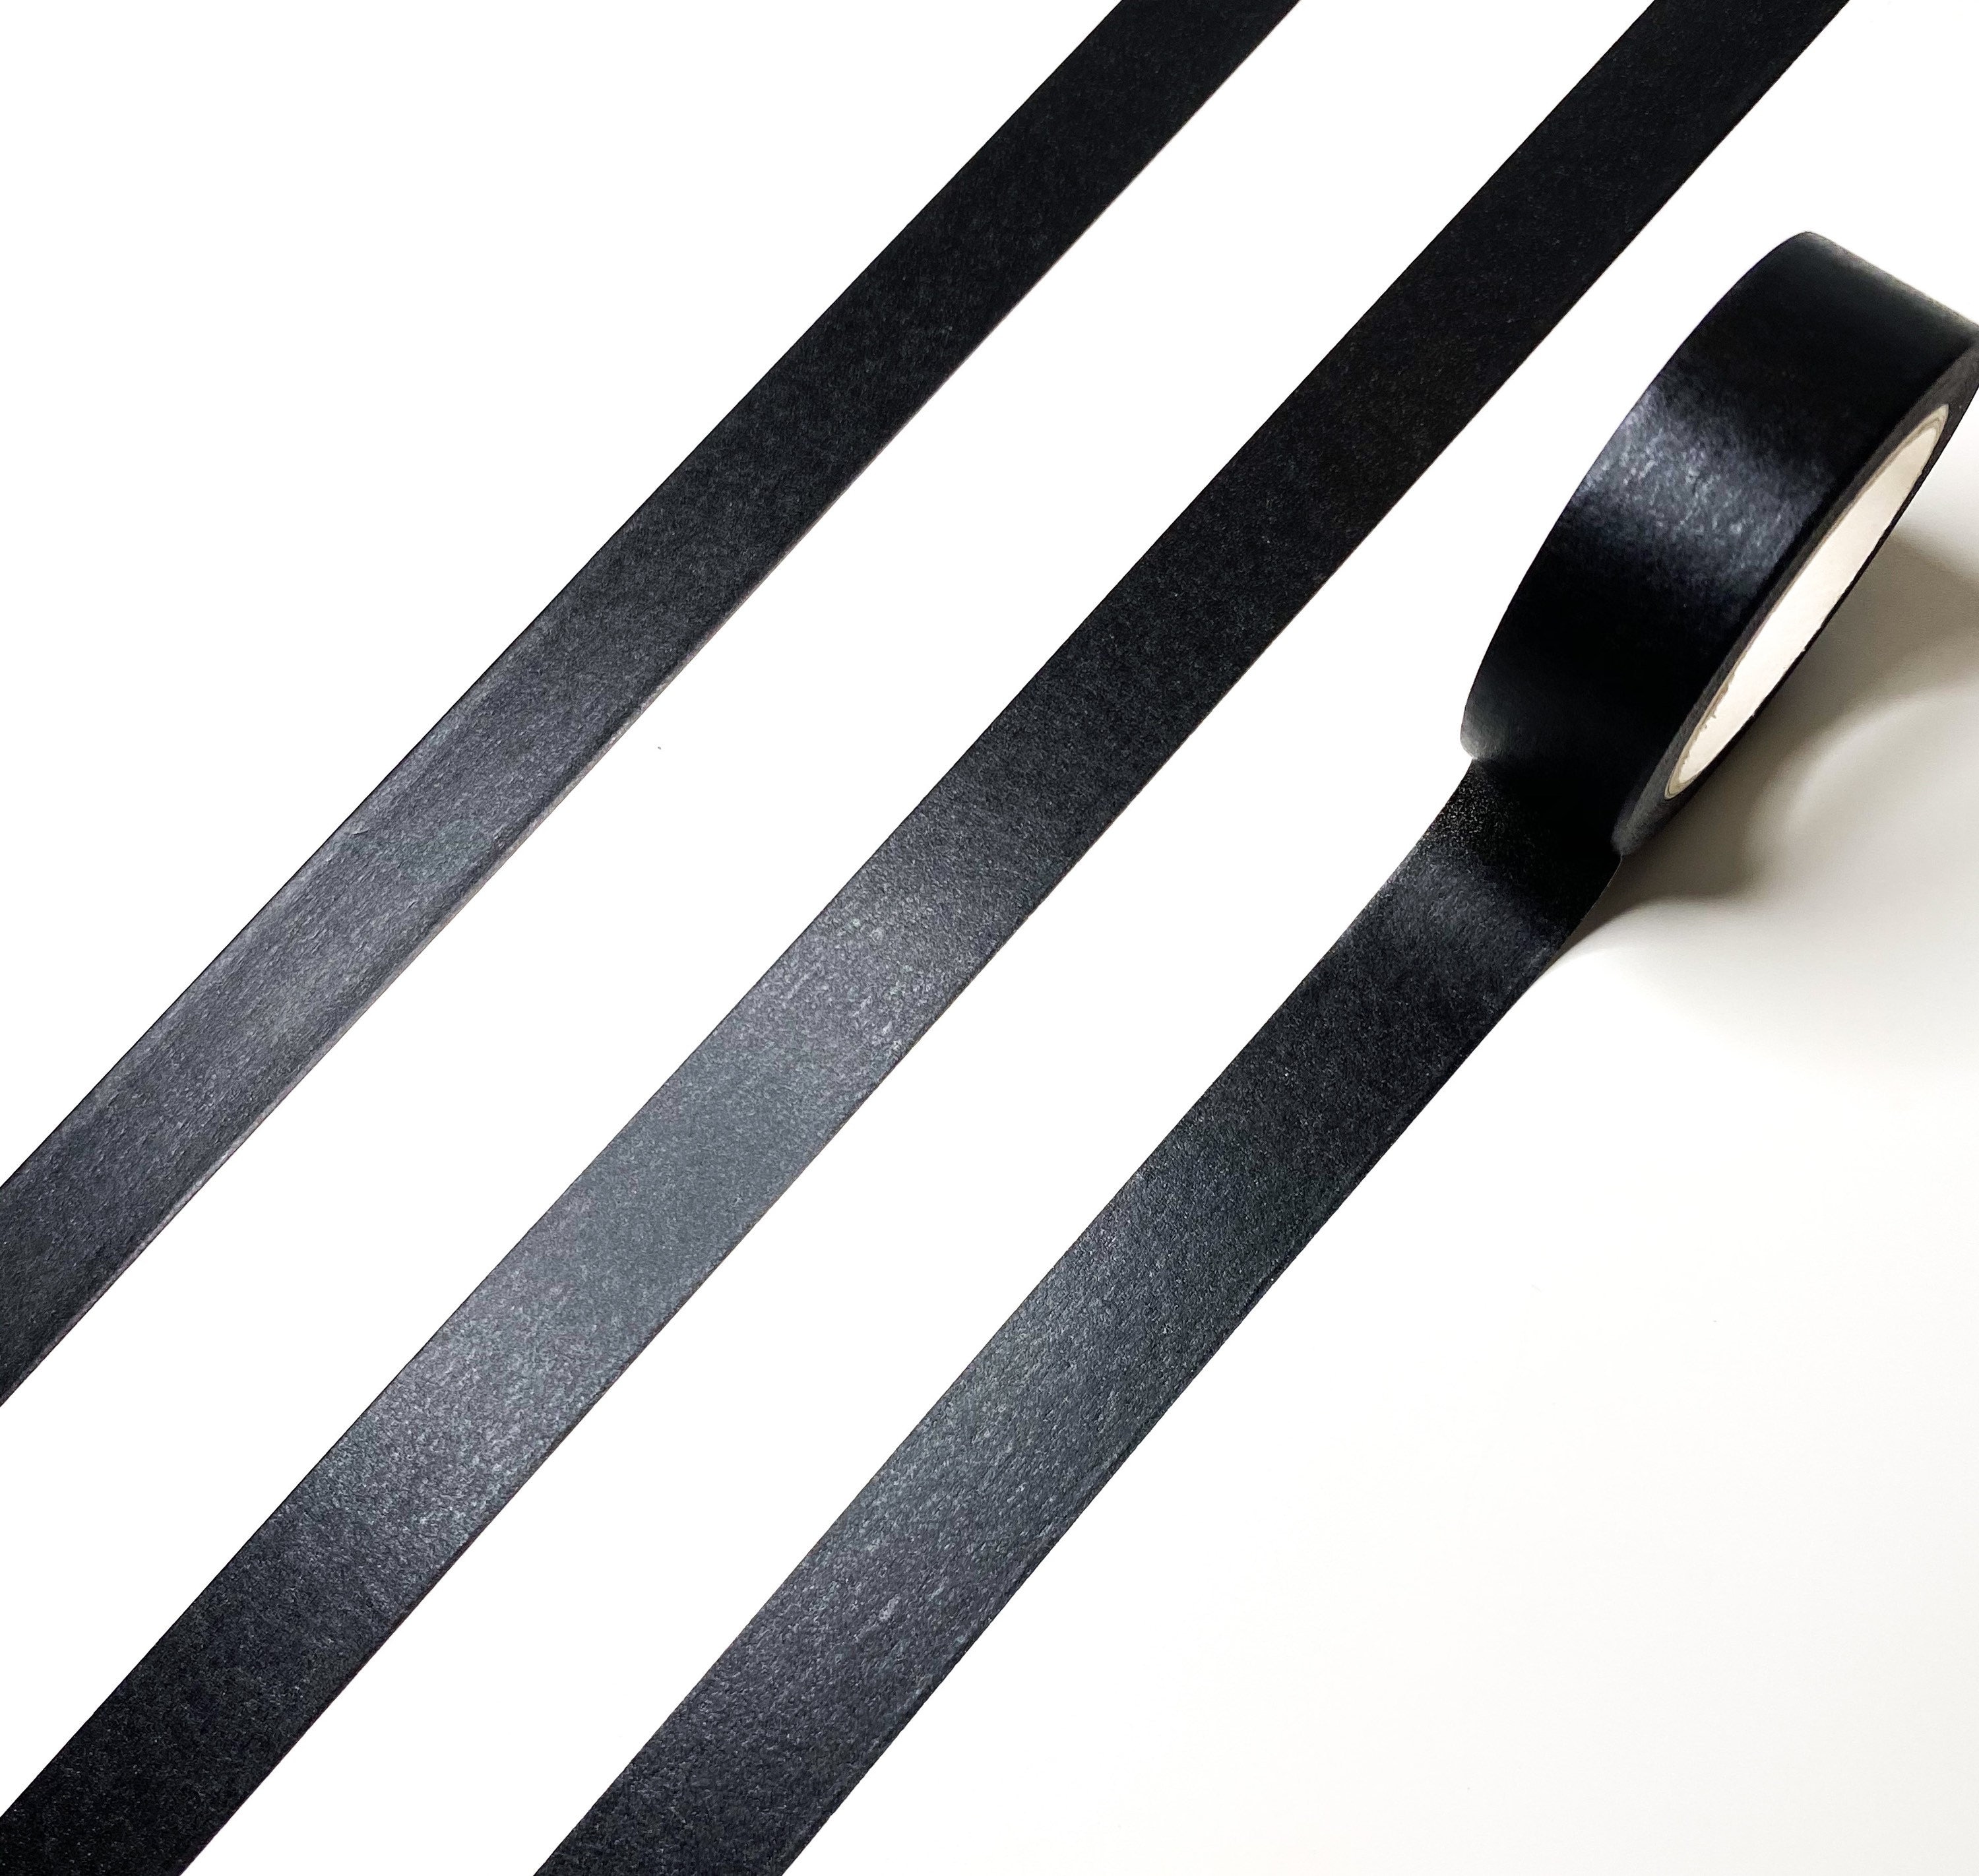 Solid Black Washi Tape, 15MM Black Paper Tape, Elegant